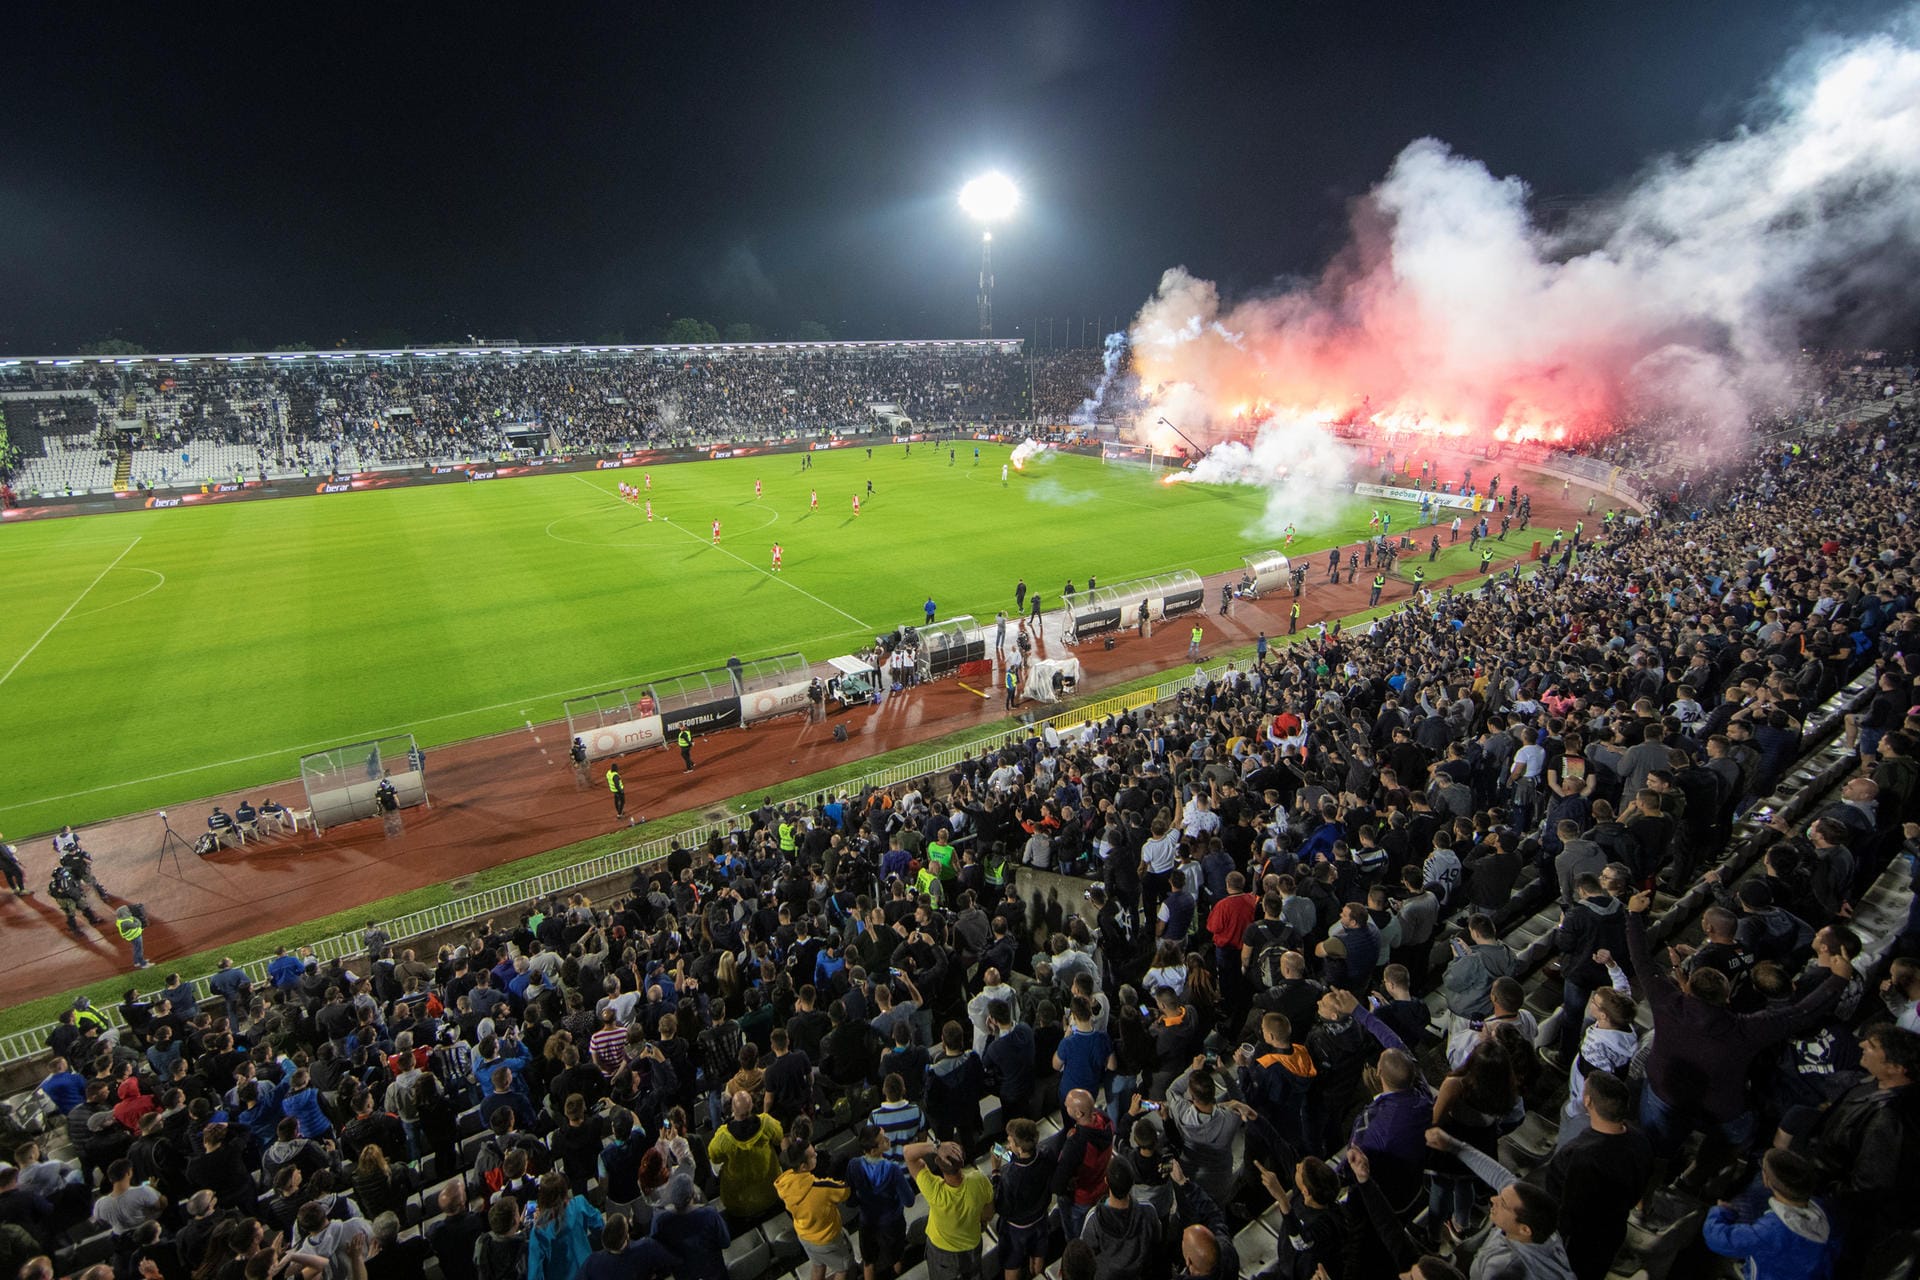 Sensation in Zeiten der Pandemie: 25.000 Zuschauer strömten zur Pokalduell des FK Partizan und Roter Stern Belgrad ins Stadion. Hier finden Sie die spektakulärsten Fotos.